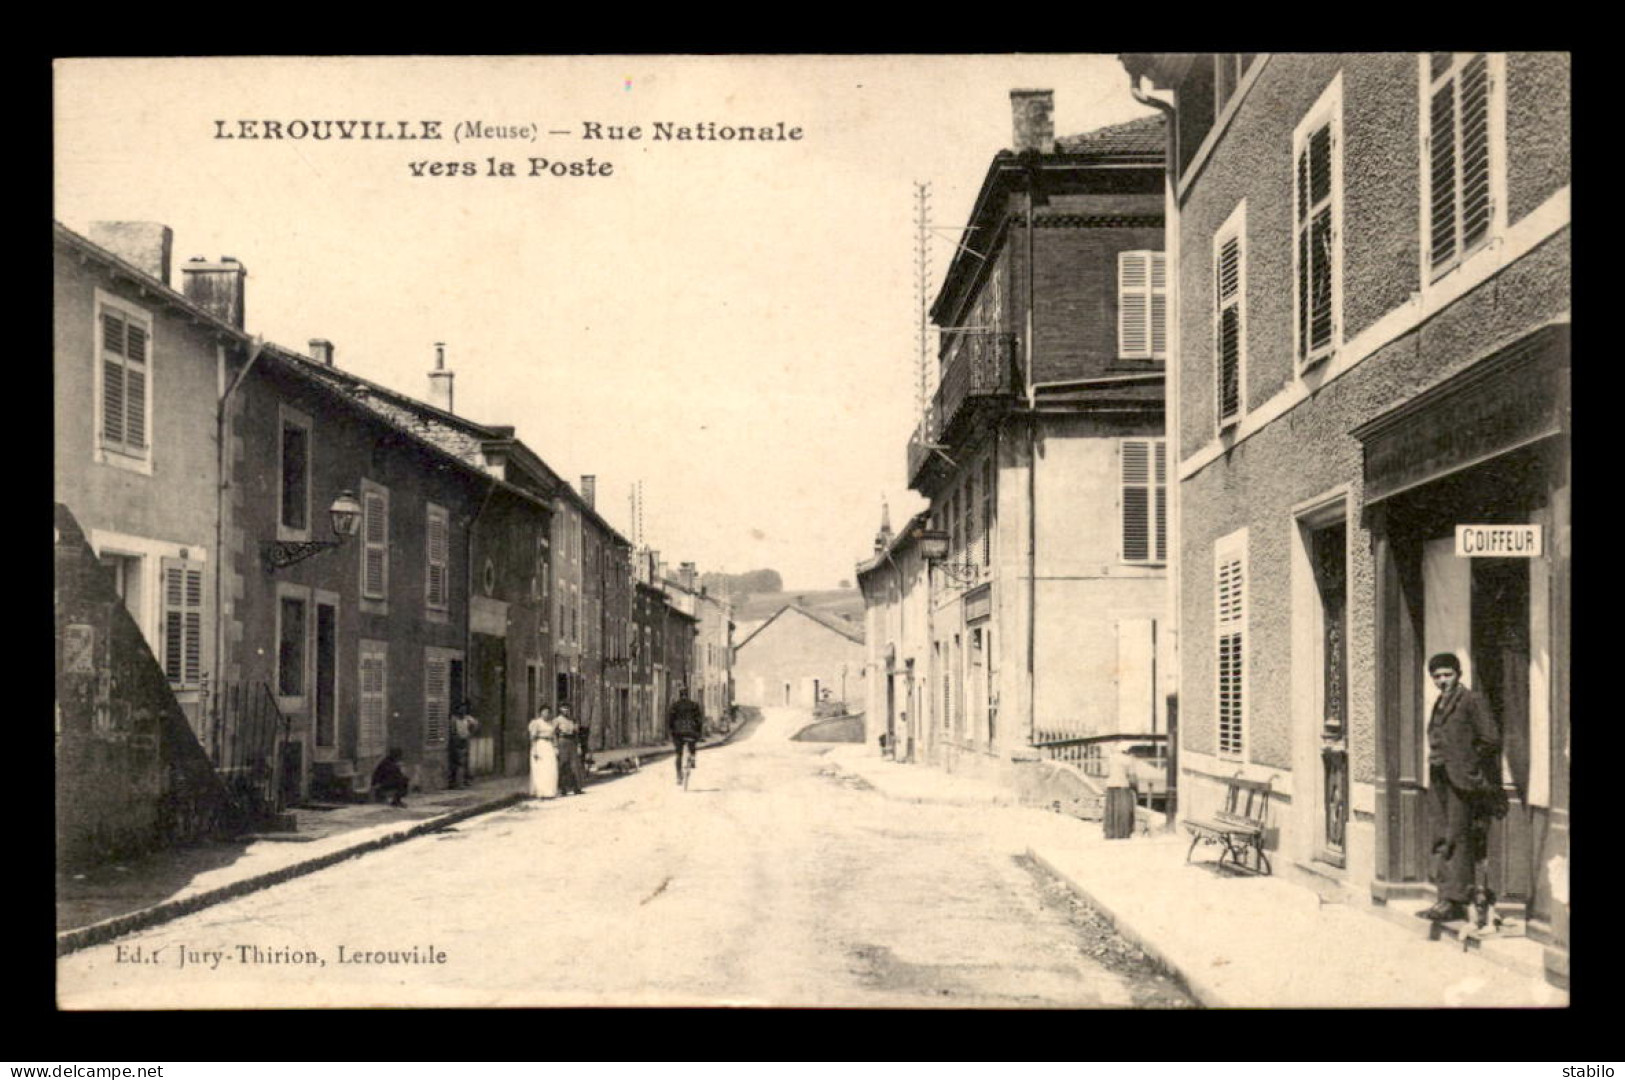 55 - LEROUVILLE - RUE NATIONALE VERS LA POSTE - EDITEUR JURY-THIRION - Lerouville